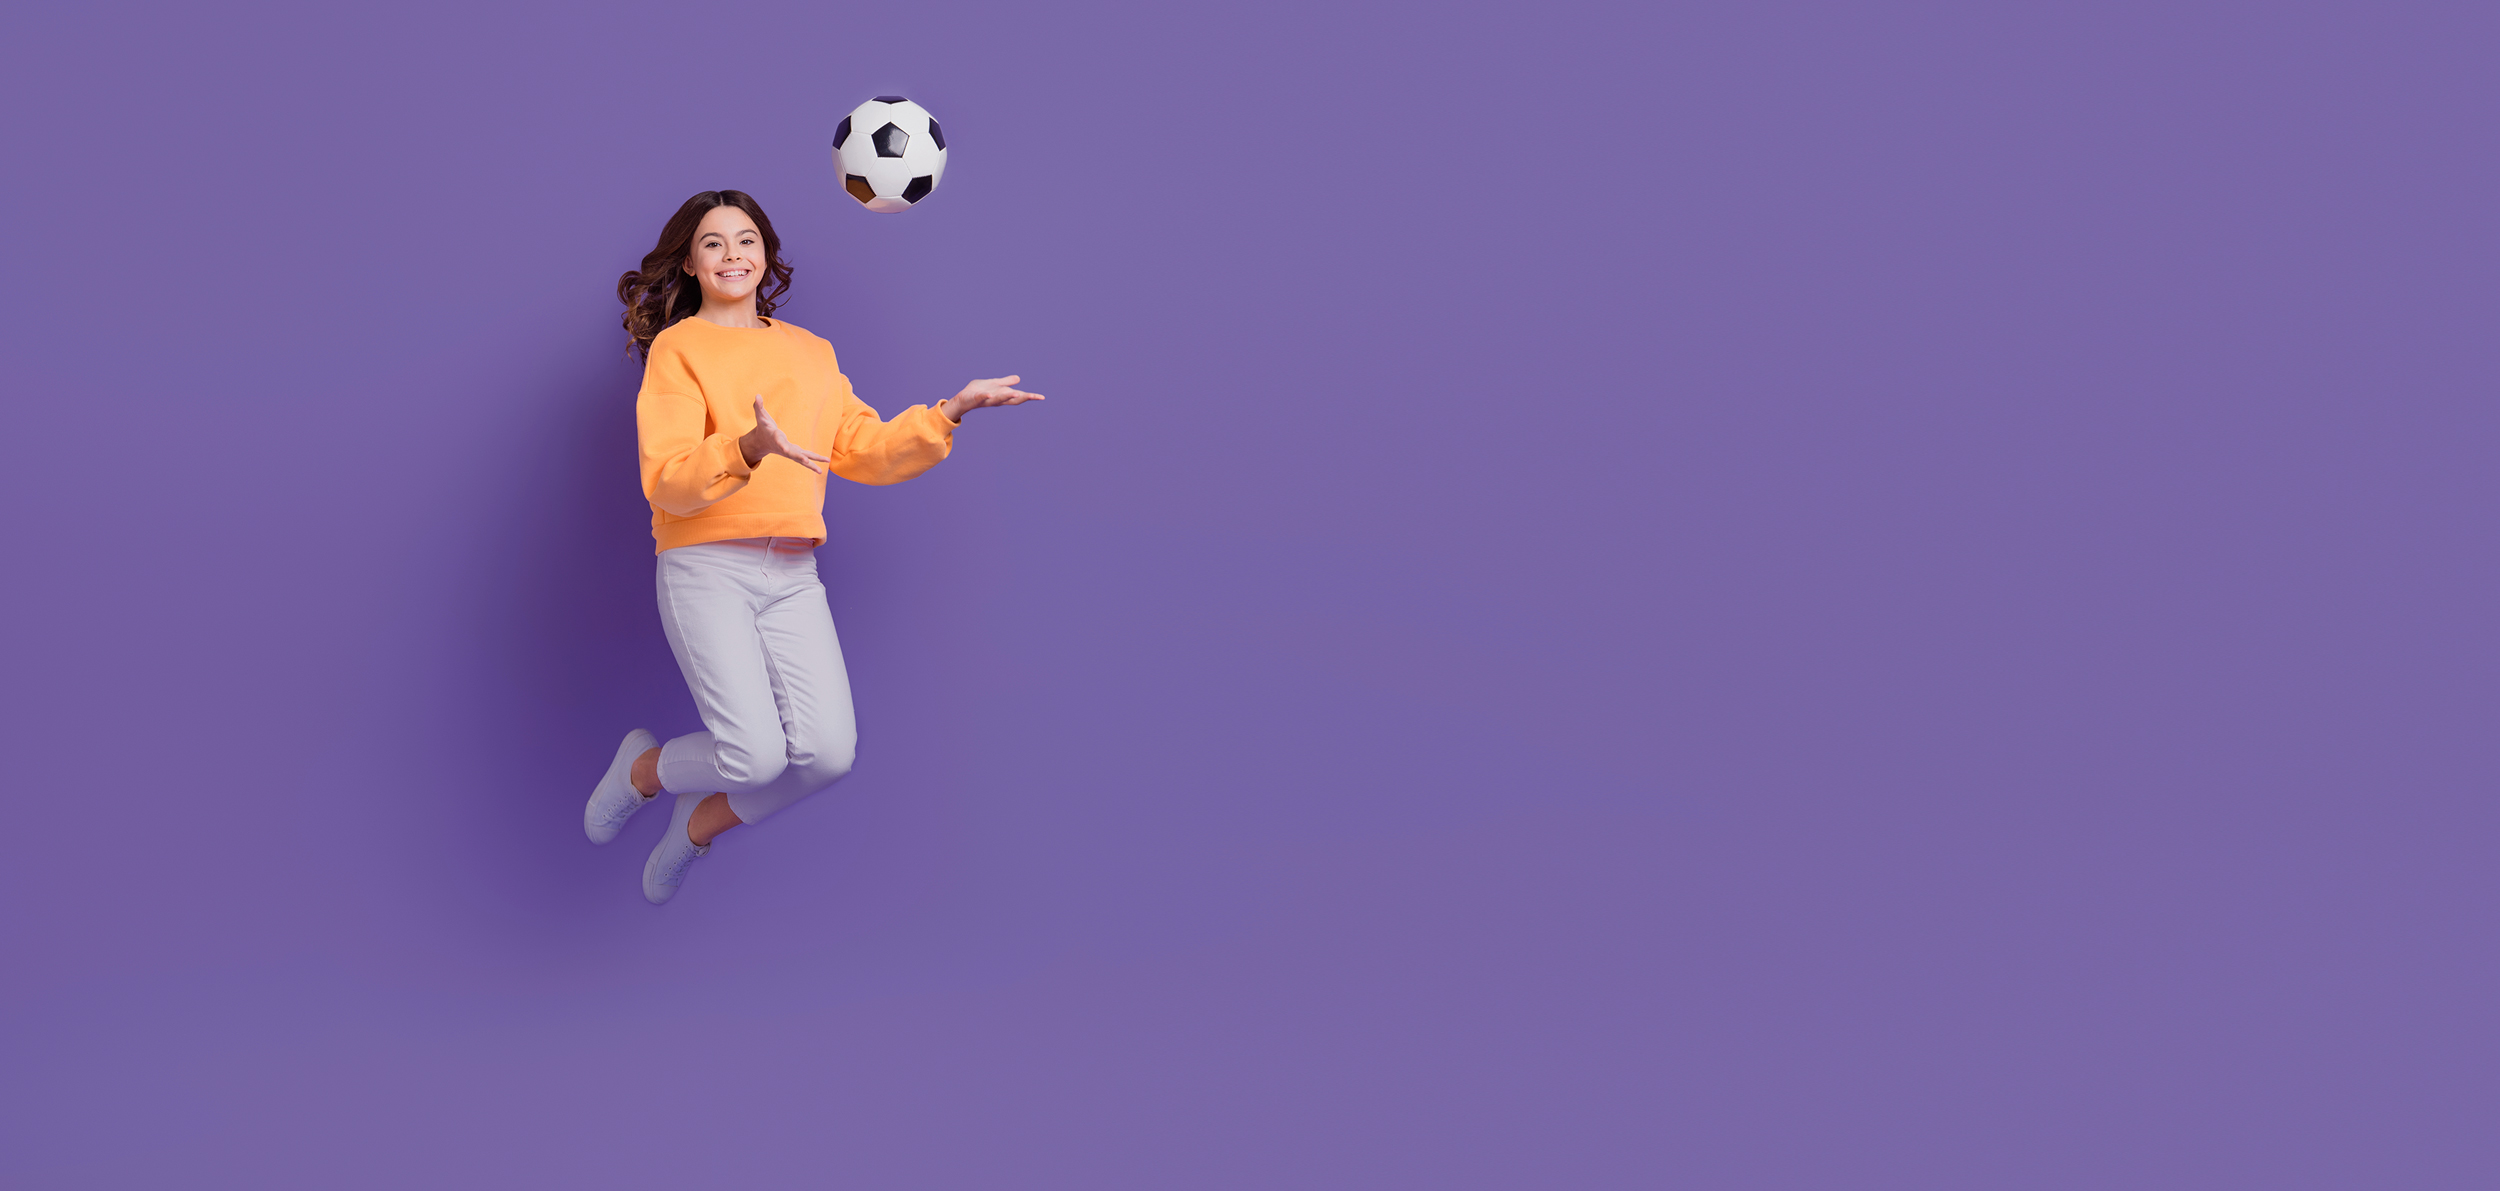 Mädchen im orangefarbenen Pullover springt mit einem Fußball in der Hand und vor einem lilafarbenen Hintergrund in die Luft